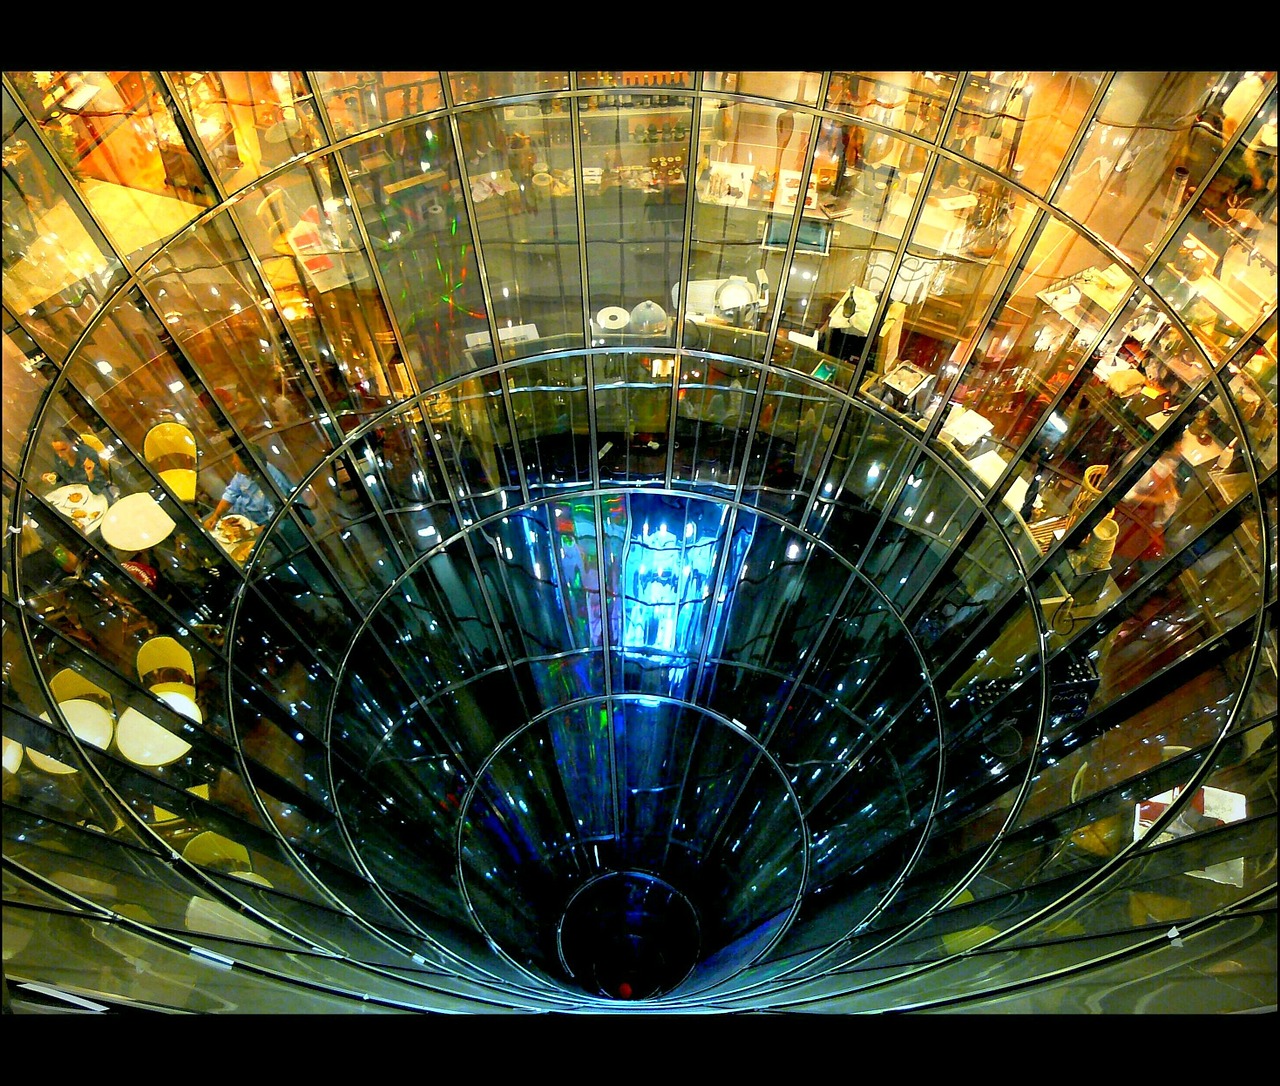 Foto que mostra o vão circular de um edifício de vidro, em que é possível ver mesas de restaurante em um dos andares.